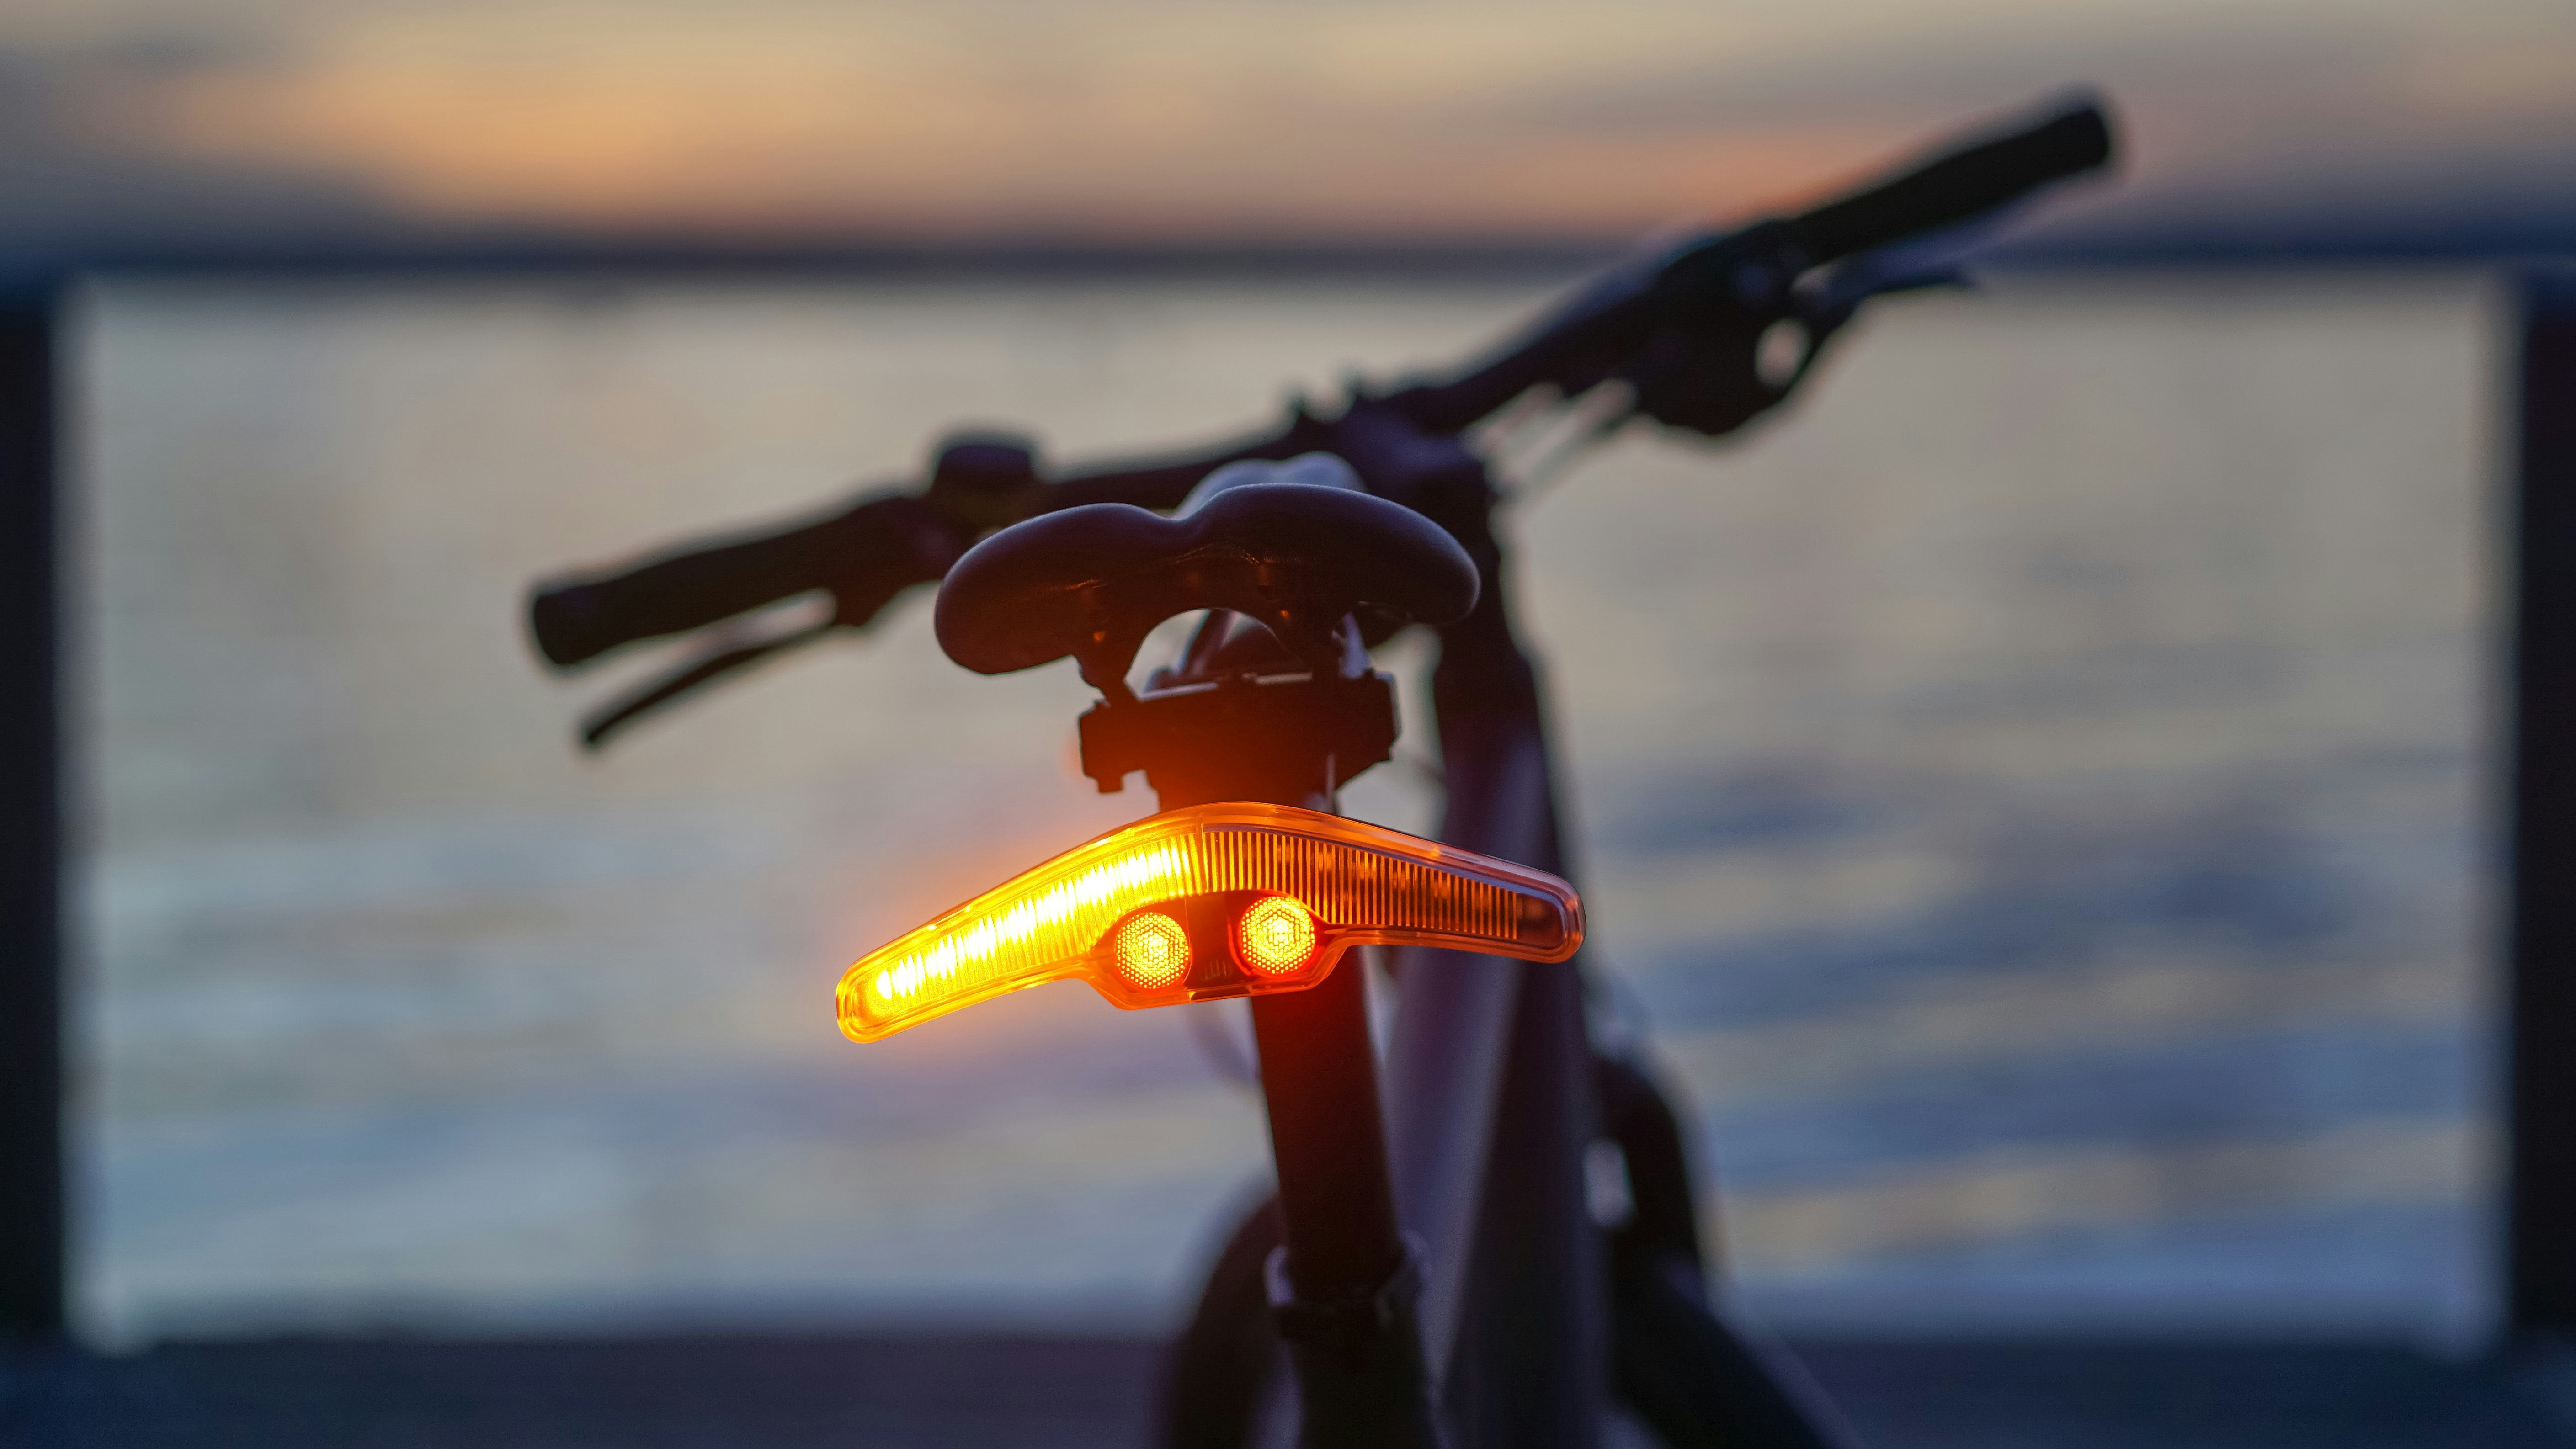 bicycle blinker light